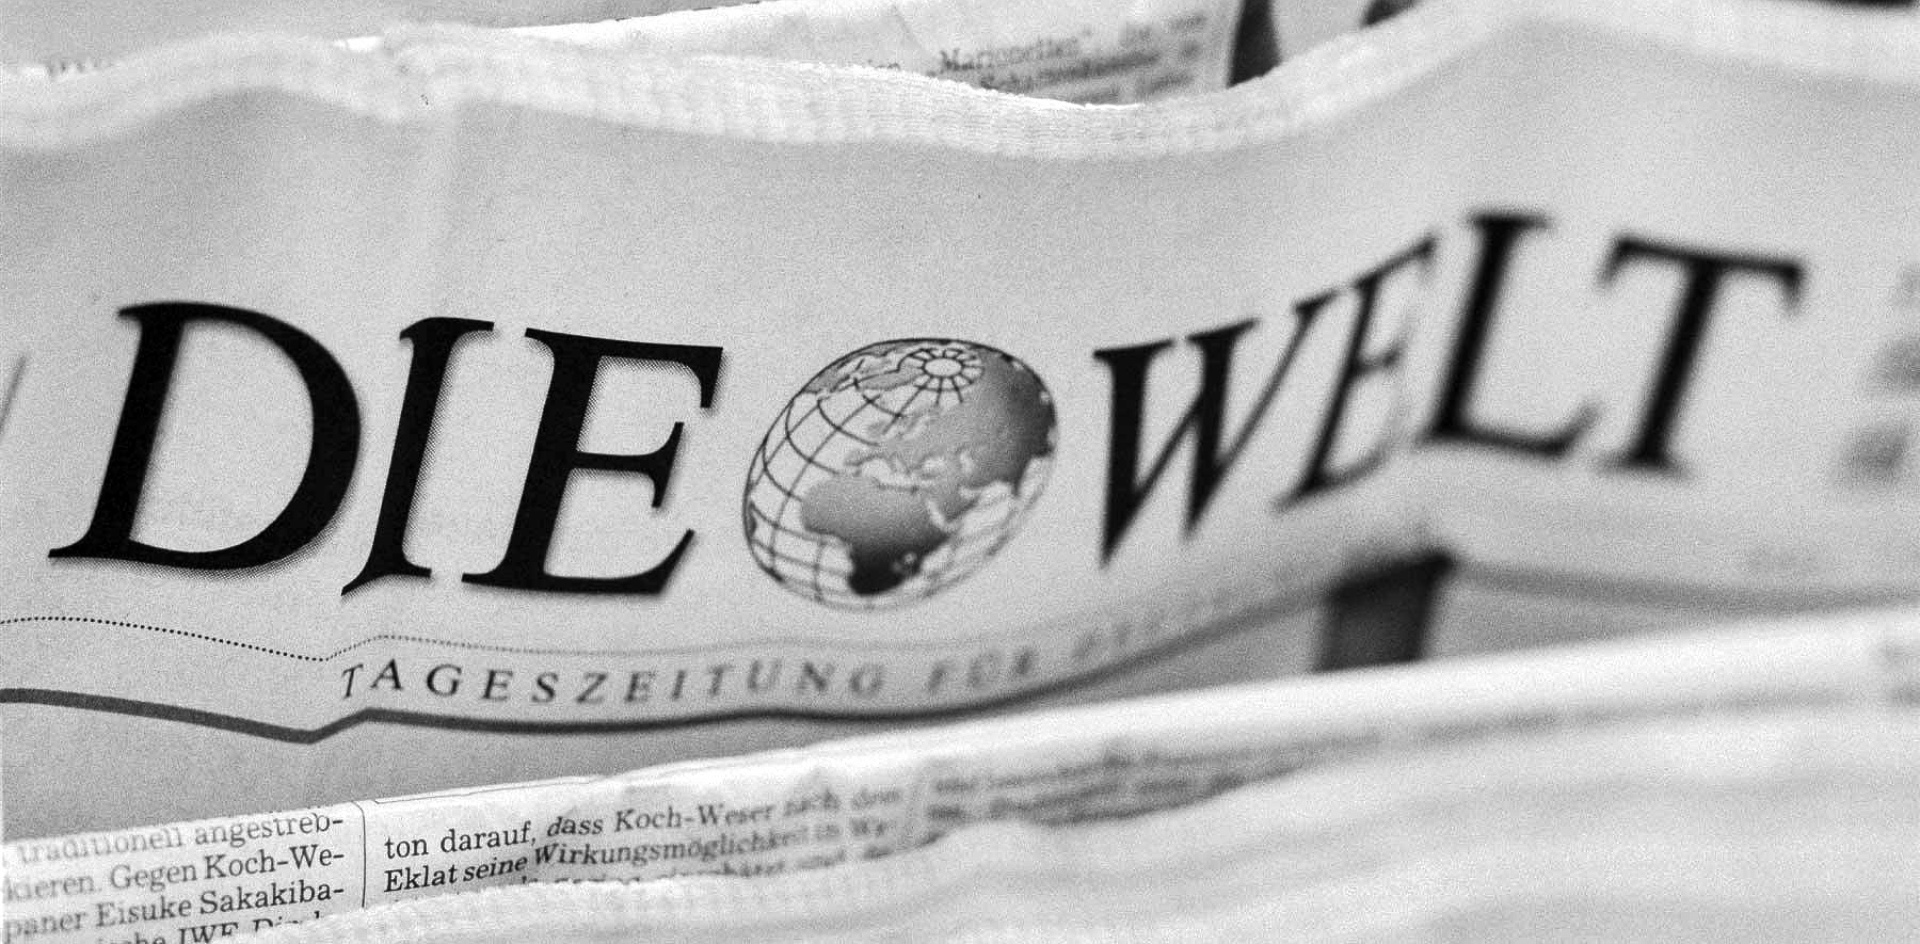 Die Welt обвинила Россию в незаконном владении Дальним Востоком